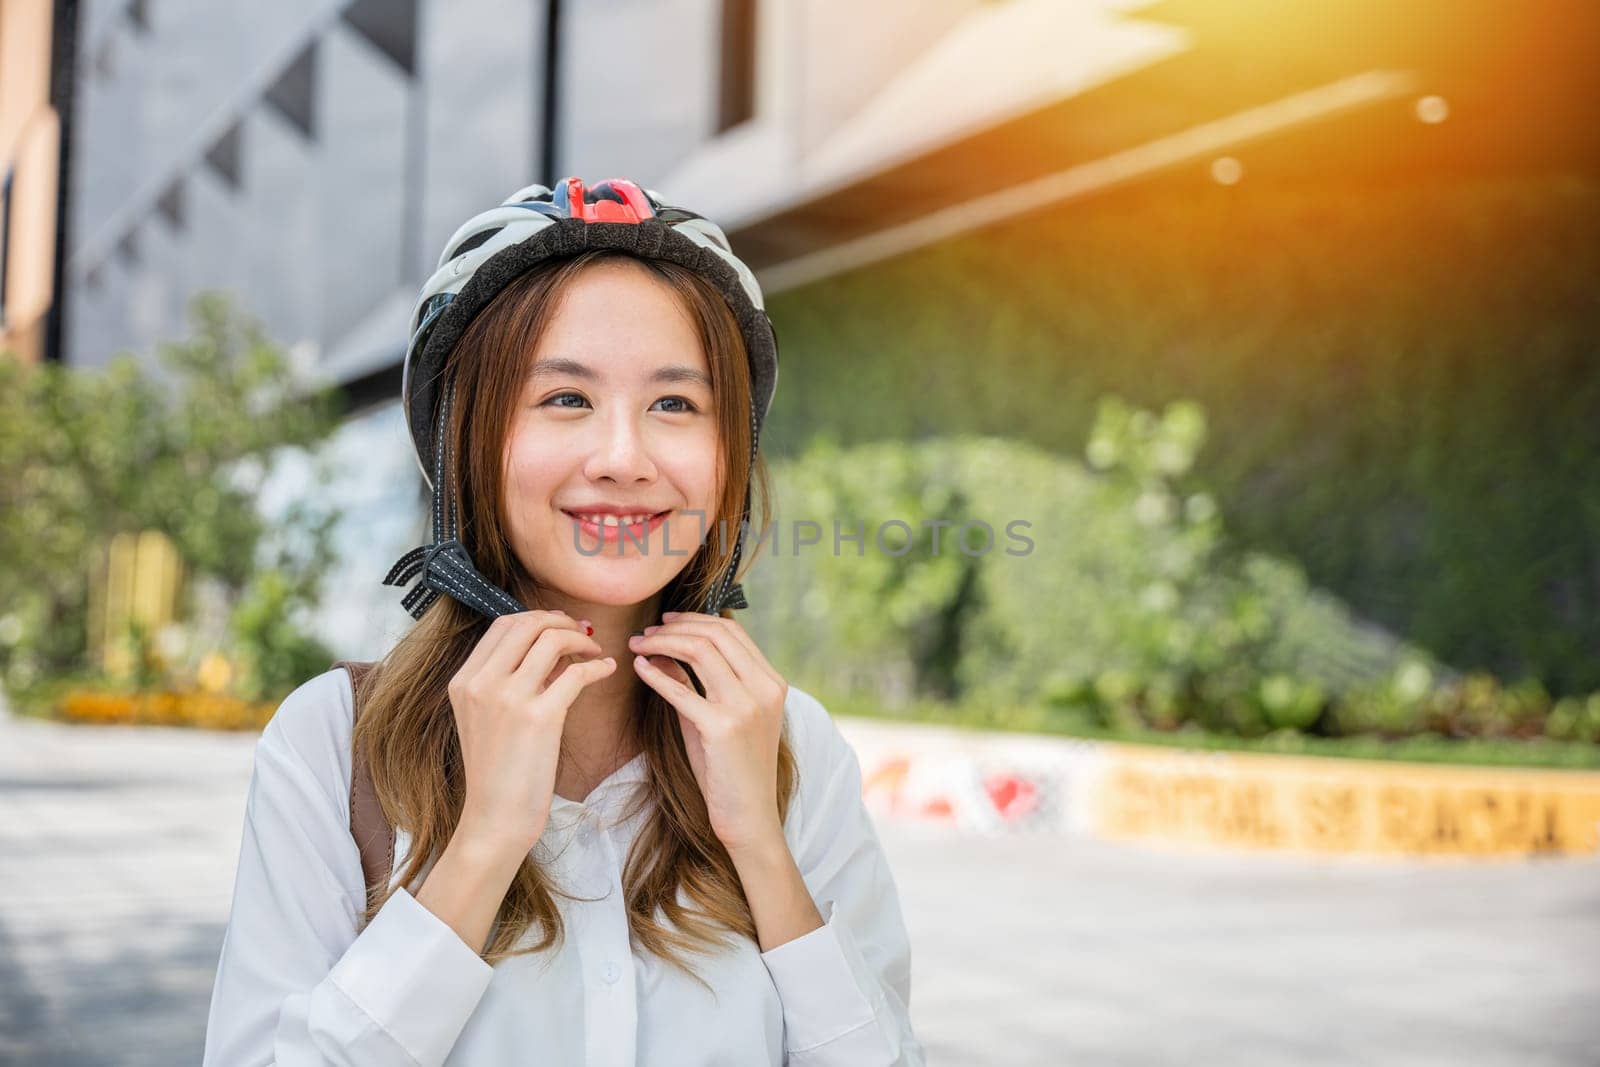 businesswoman putting biking helmet prepared cyclists go to work by Sorapop